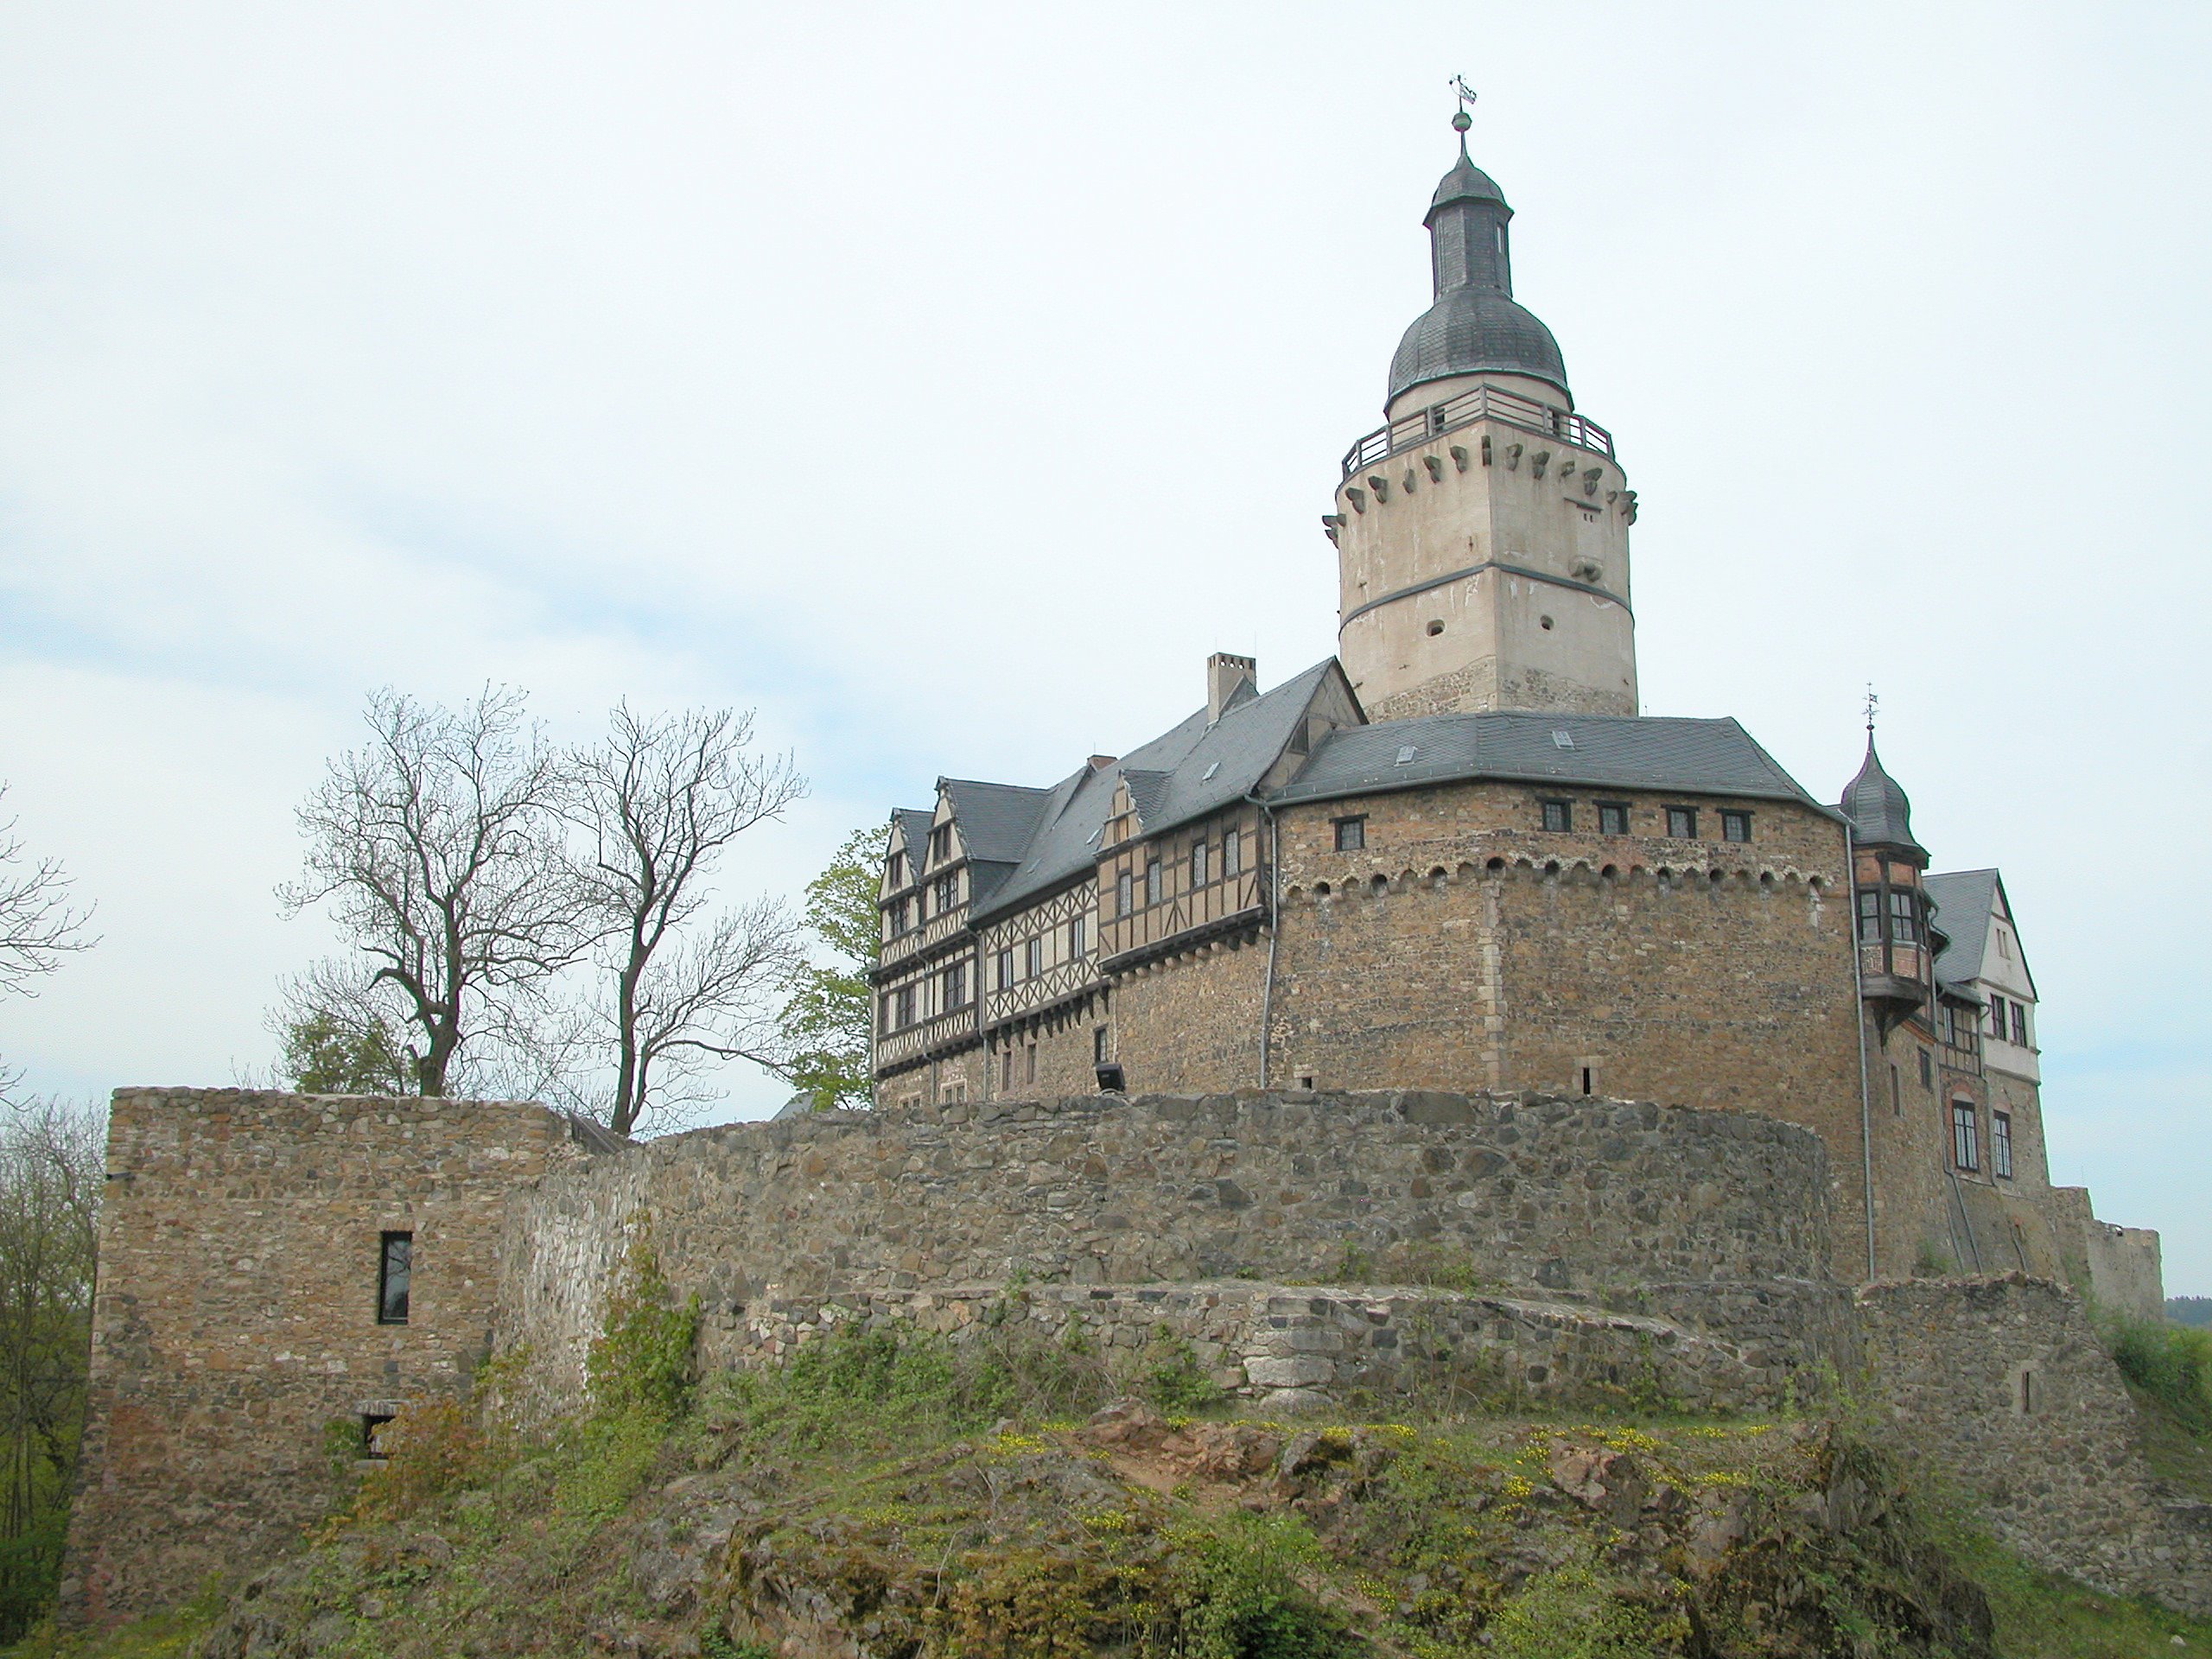 HQ Falkenstein Castle Wallpapers | File 880.54Kb